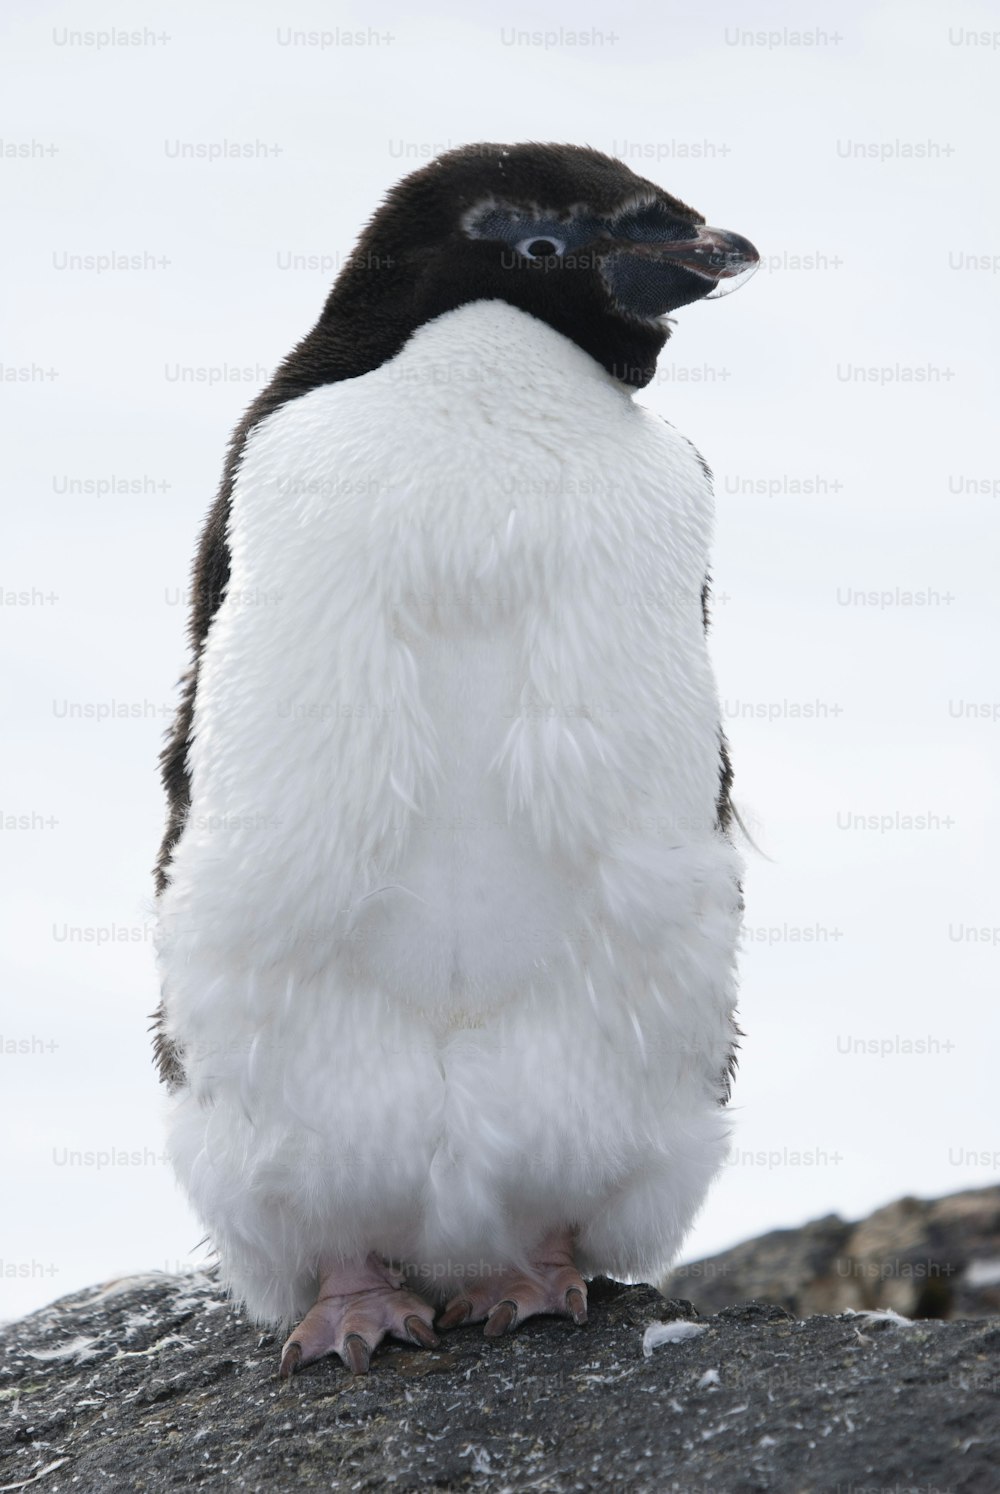 Um pinguim de Adélia na Península Antártica